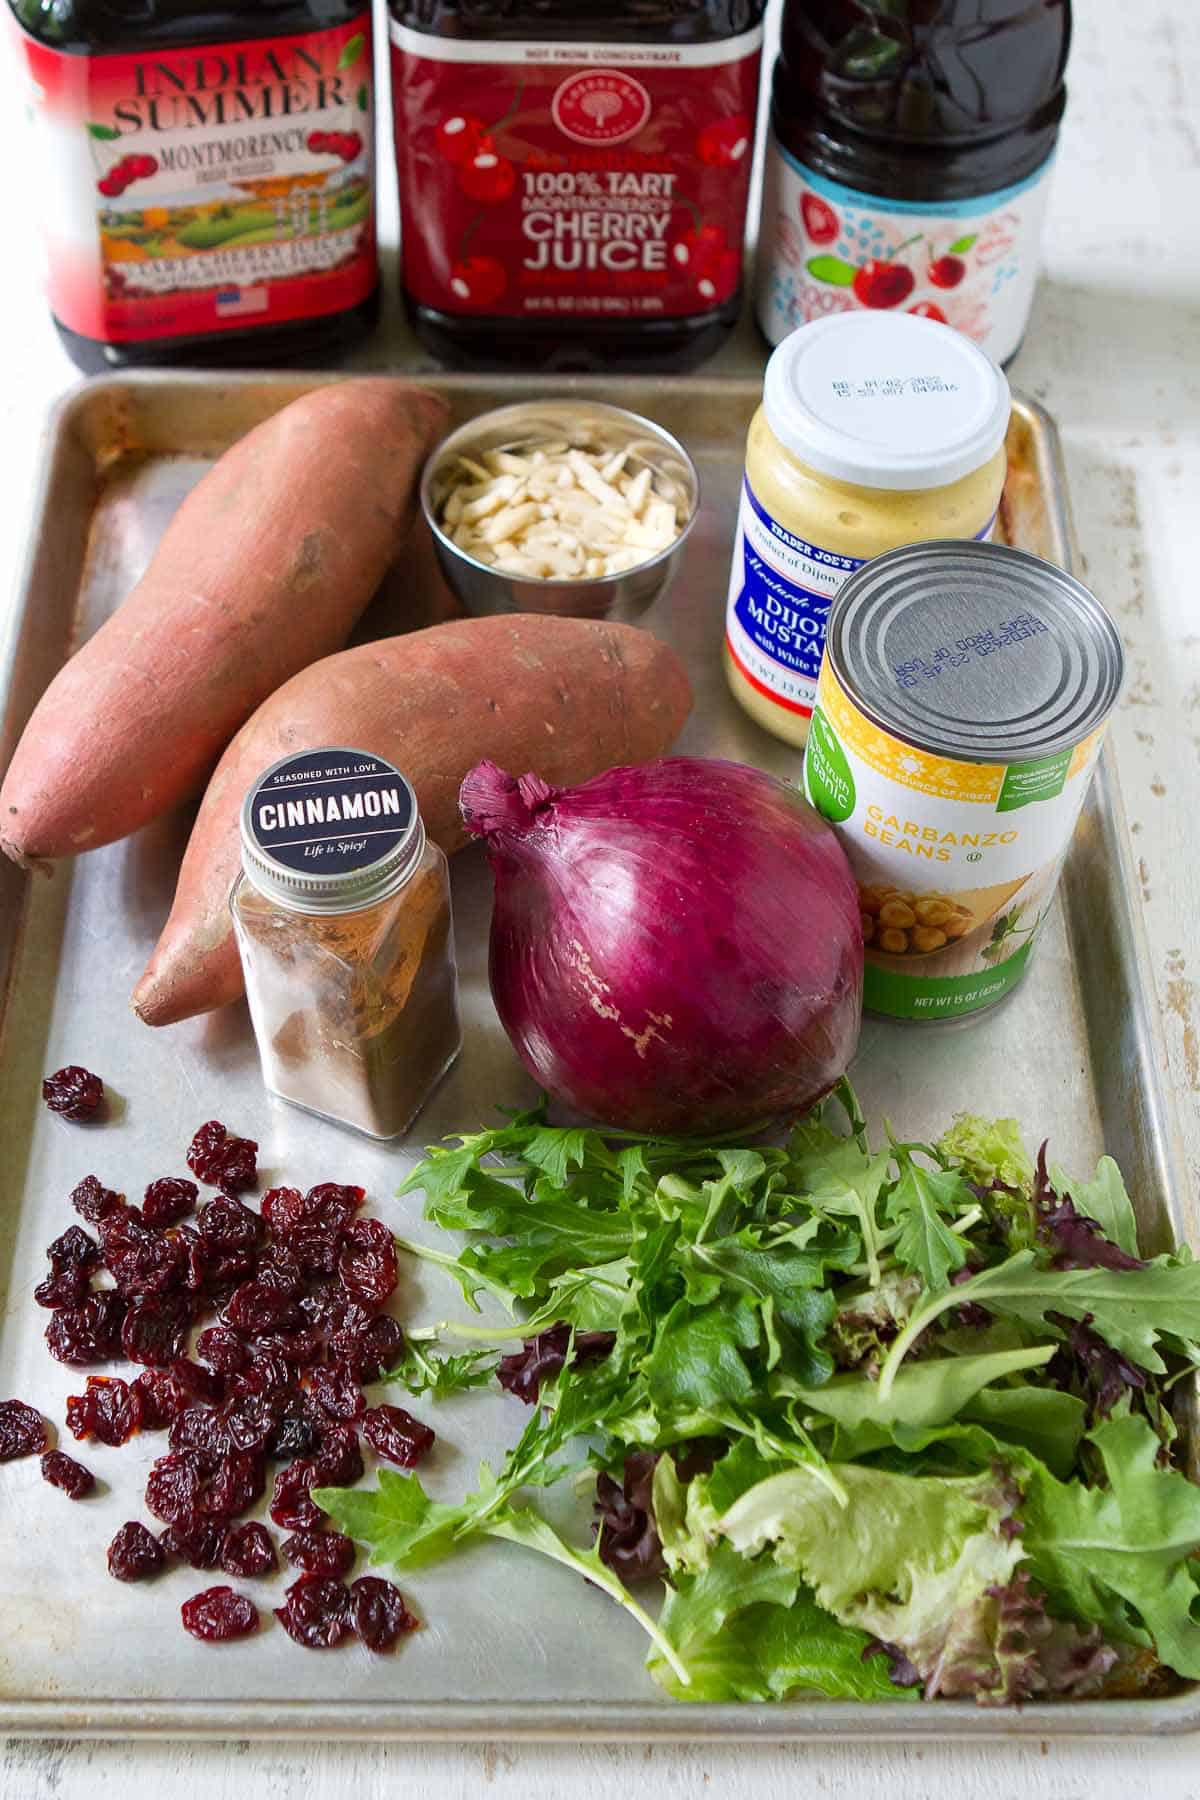 Ingredients for sweet potato salad on baking sheet.